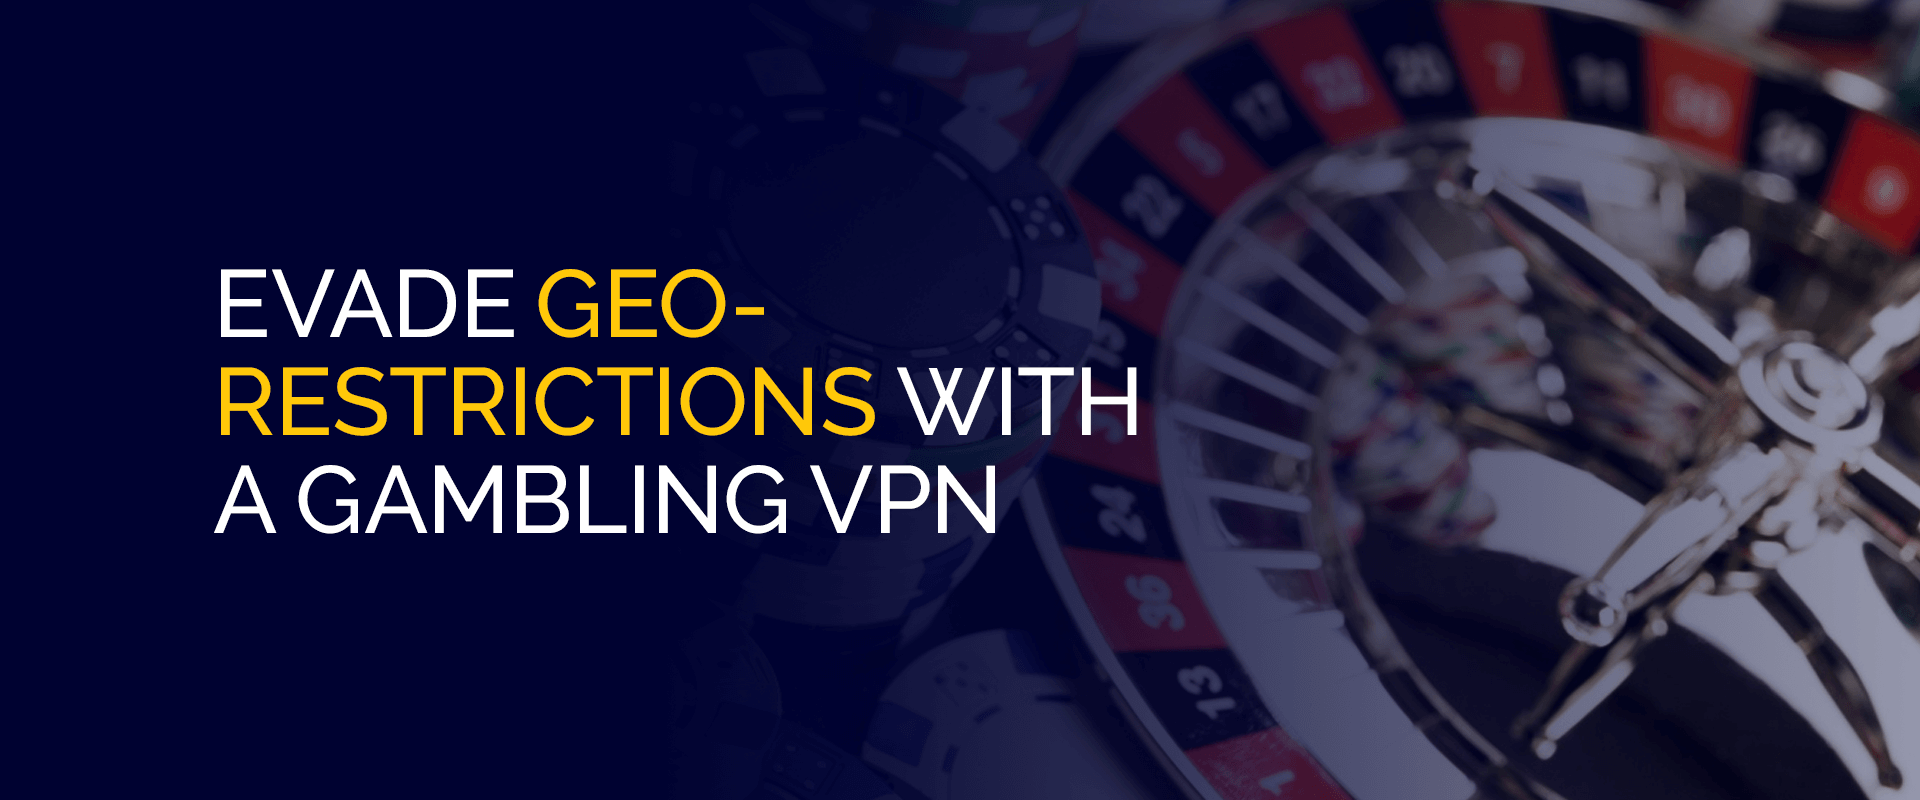 Evakuéiert Geo-Restriktiounen mat engem Gambling VPN